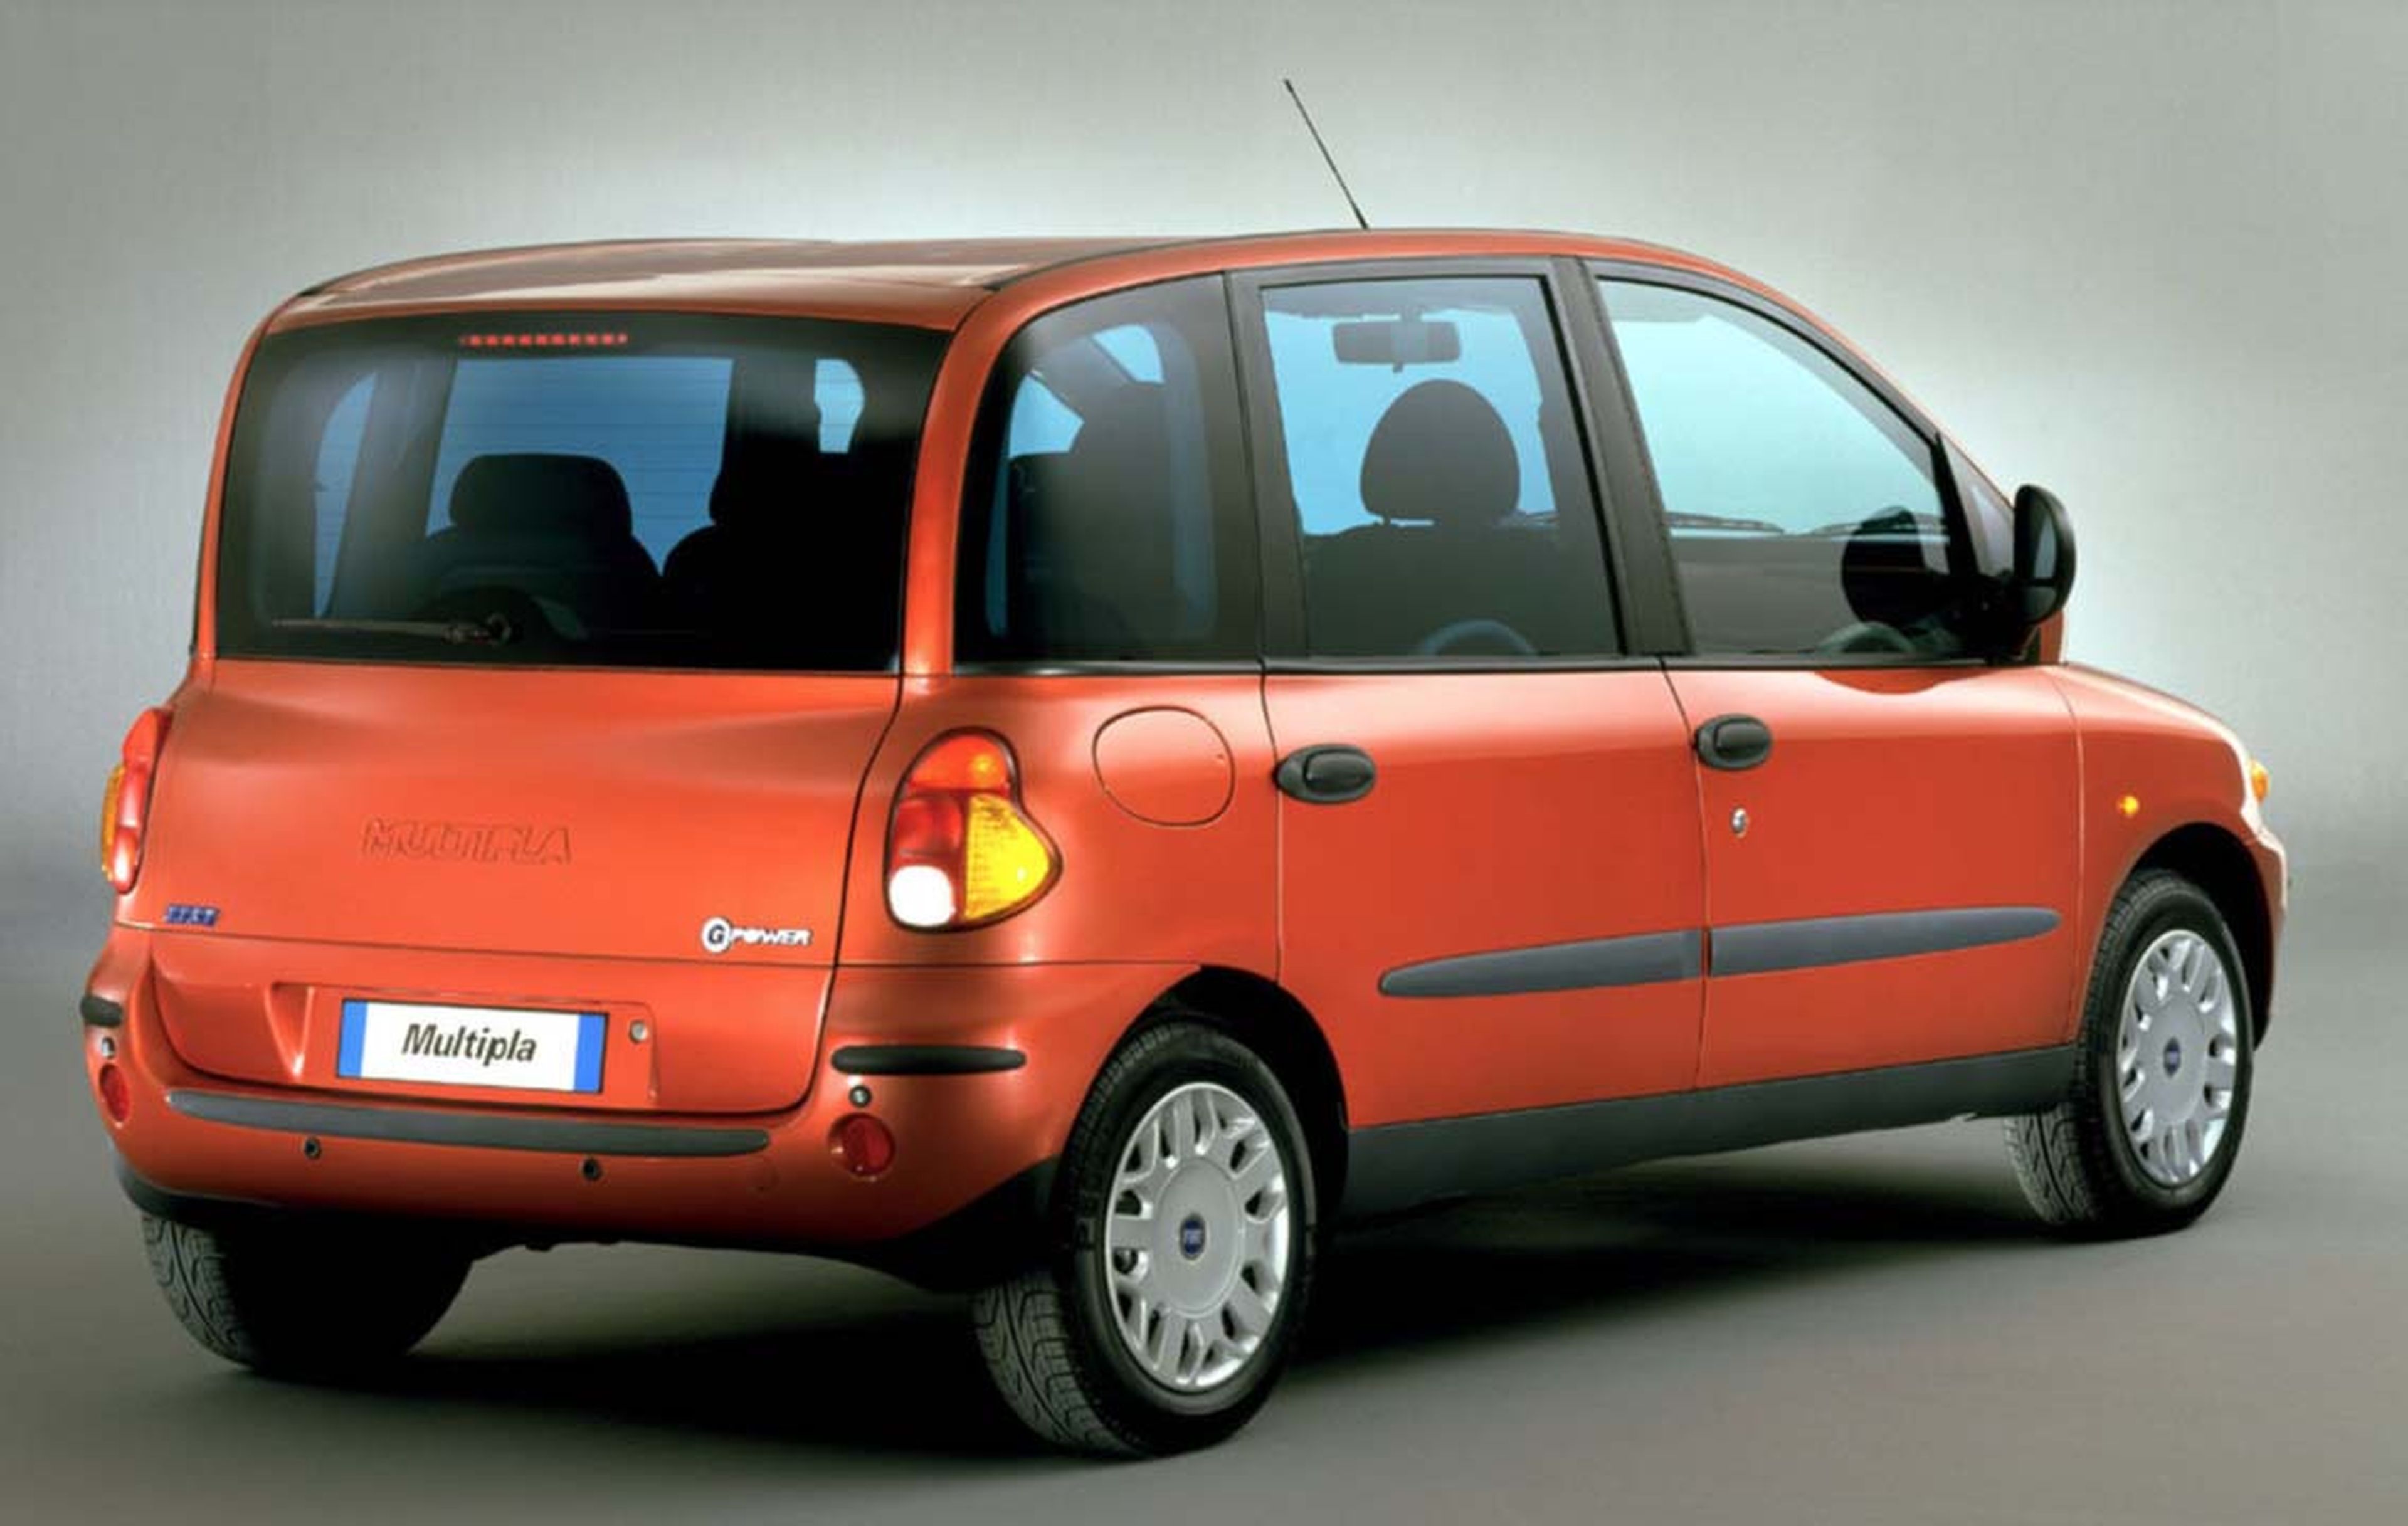 ¿Tiene sentido un Fiat Multipla en 2020?